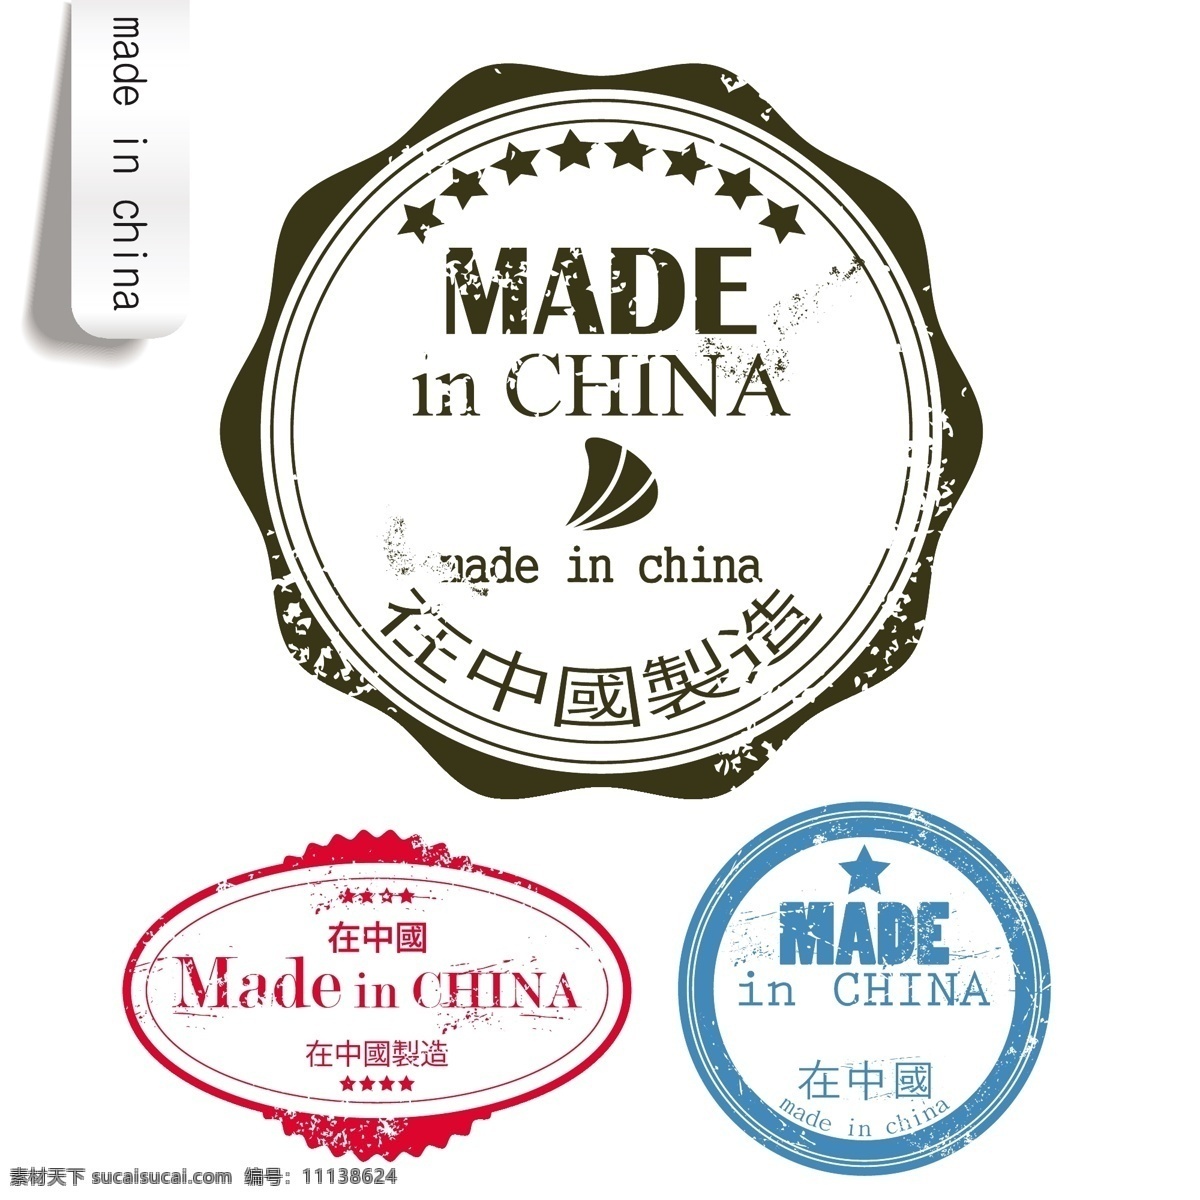 中国制造 标签 china eps格式 in made 标贴 徽章 矢量素材 图章 印章 矢量 印签 海报 其他海报设计